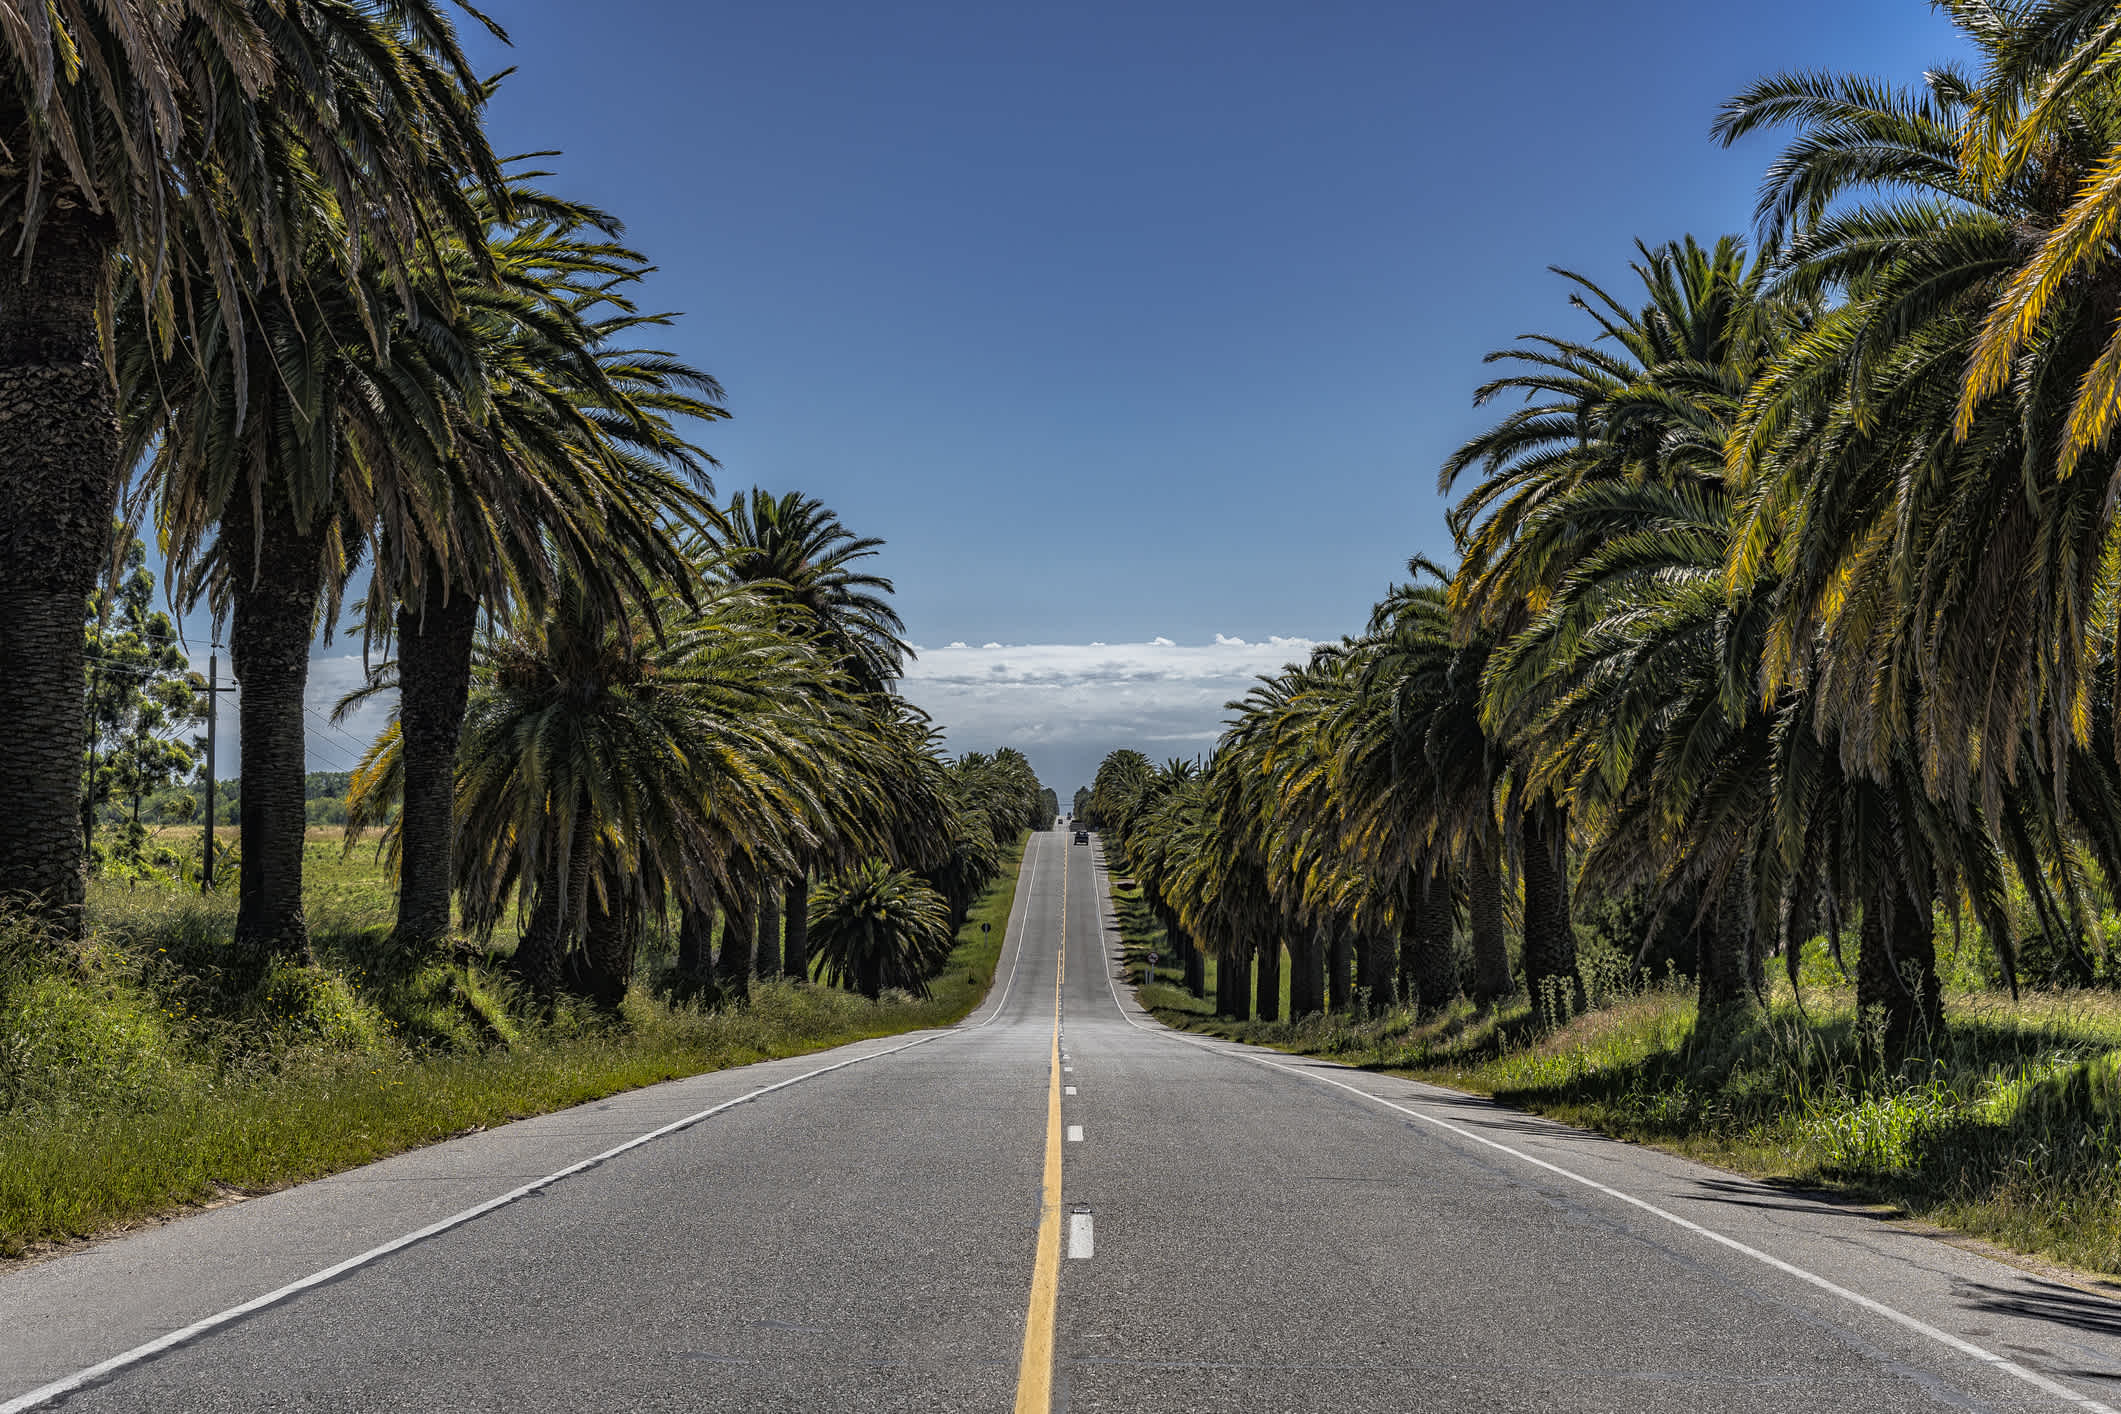 Der Autobahn mit Palmen in Uruguay

